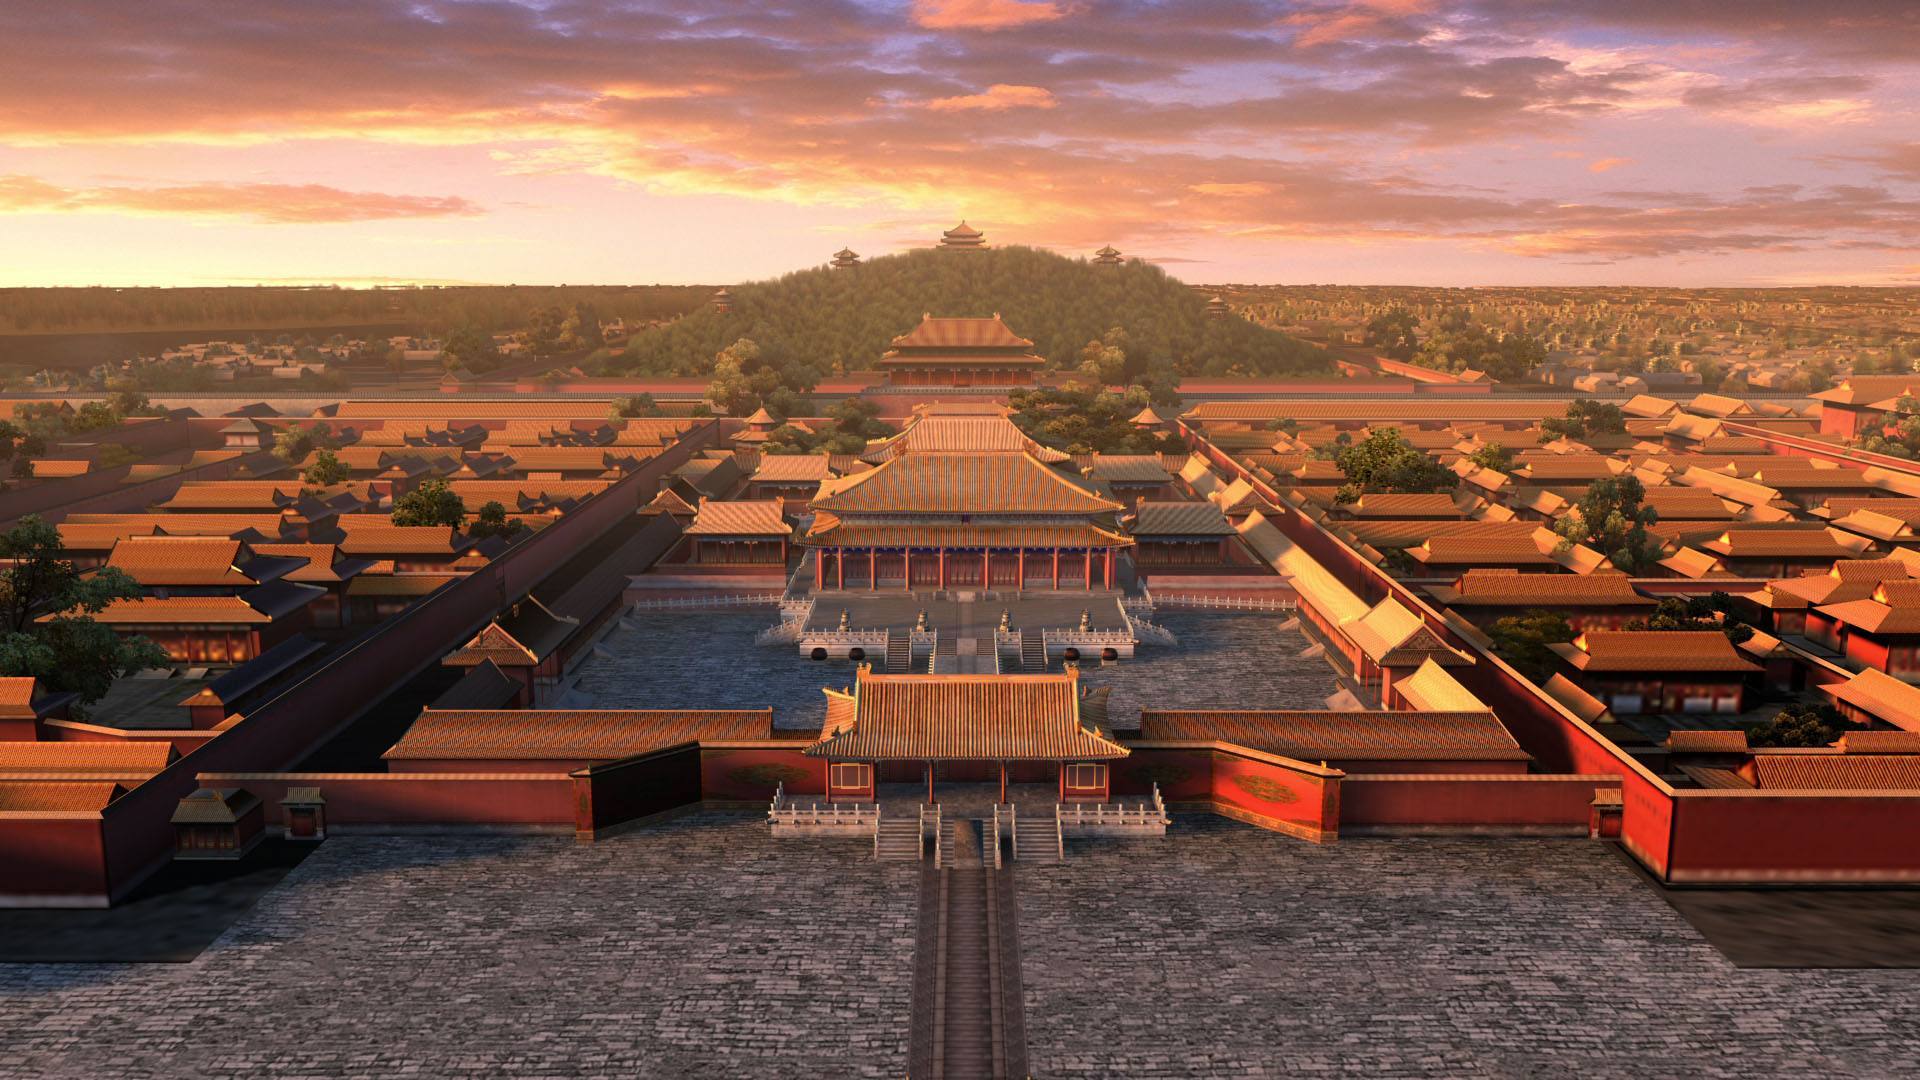 故宫为何称为“紫禁城”，而不是“黄禁城”或“红禁城”……